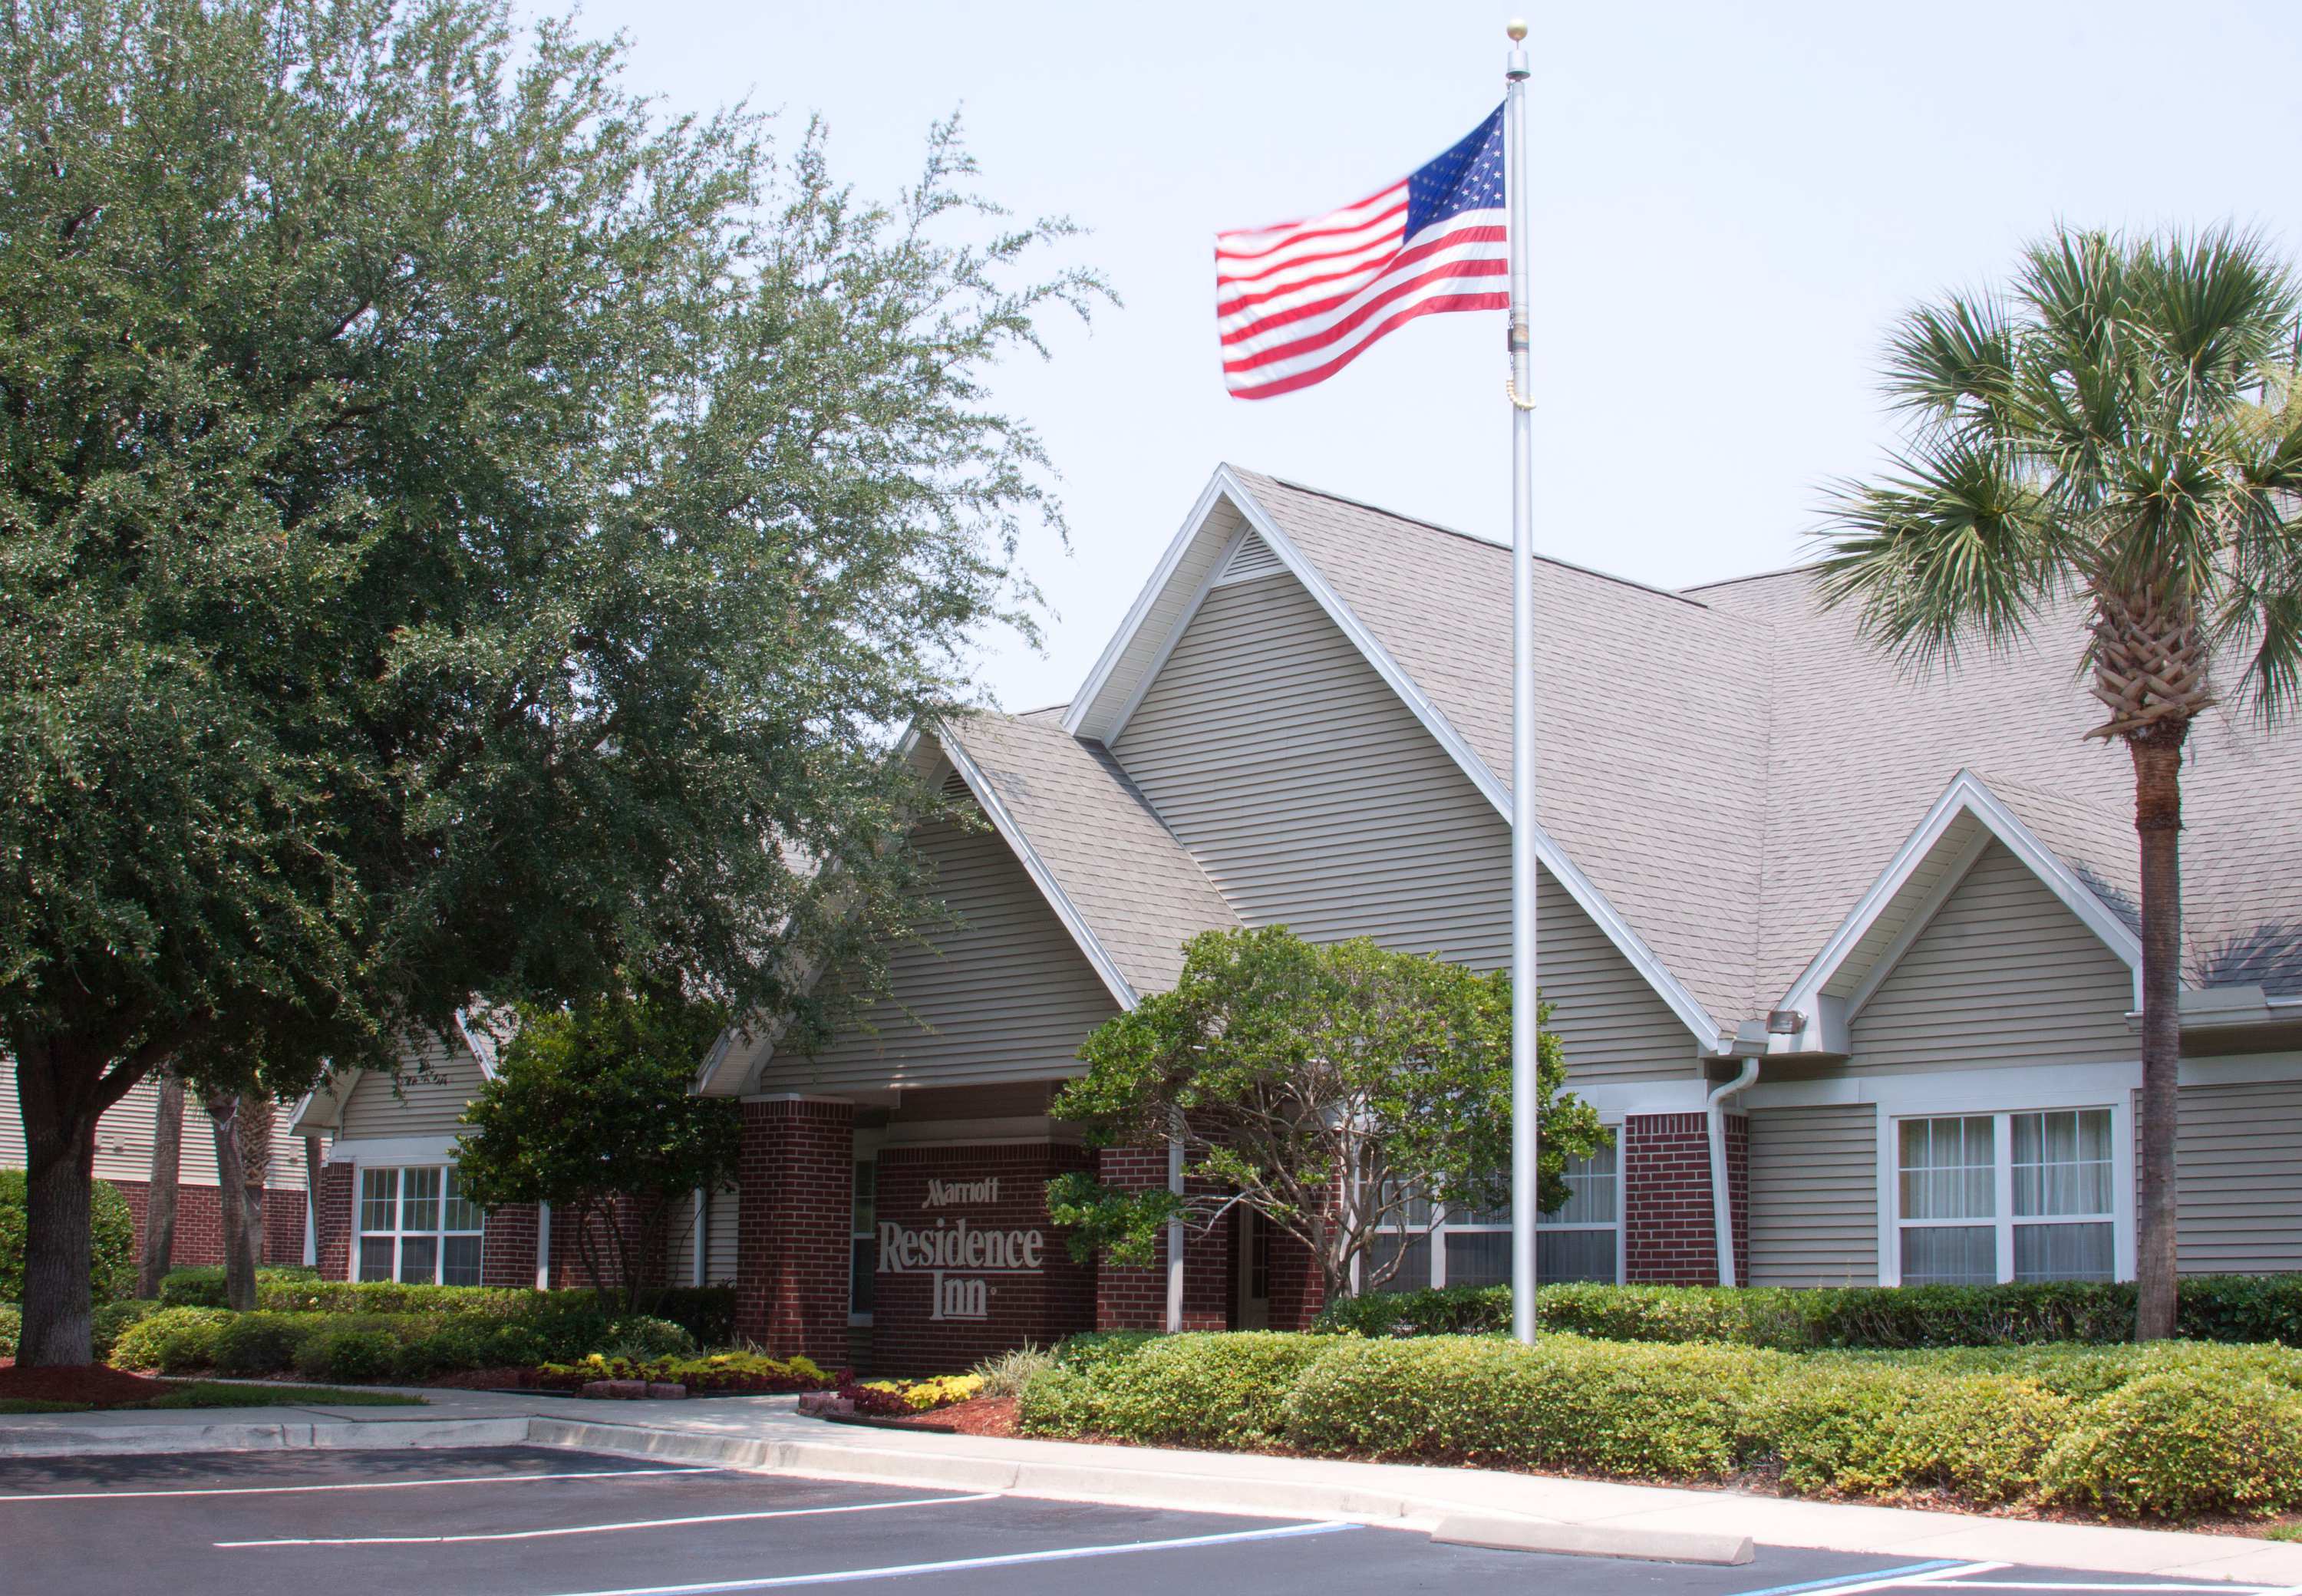 Photo of Residence Inn Jacksonville Butler Boulevard, Jacksonville, FL